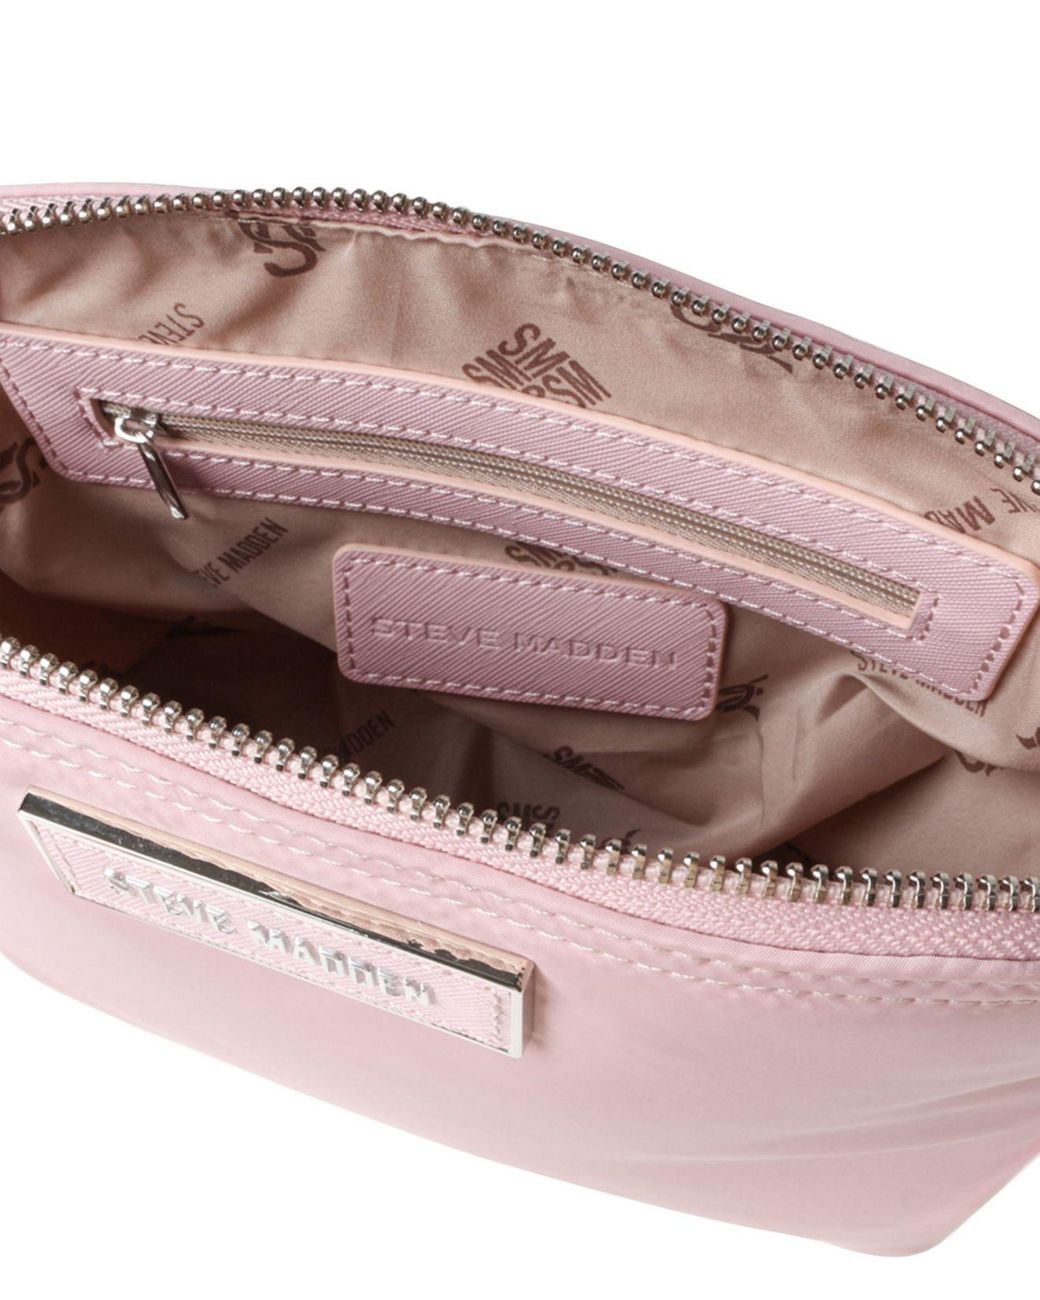 Steve Madden Daren Nylon Dome Crossbody Bag, Light Pink: Handbags